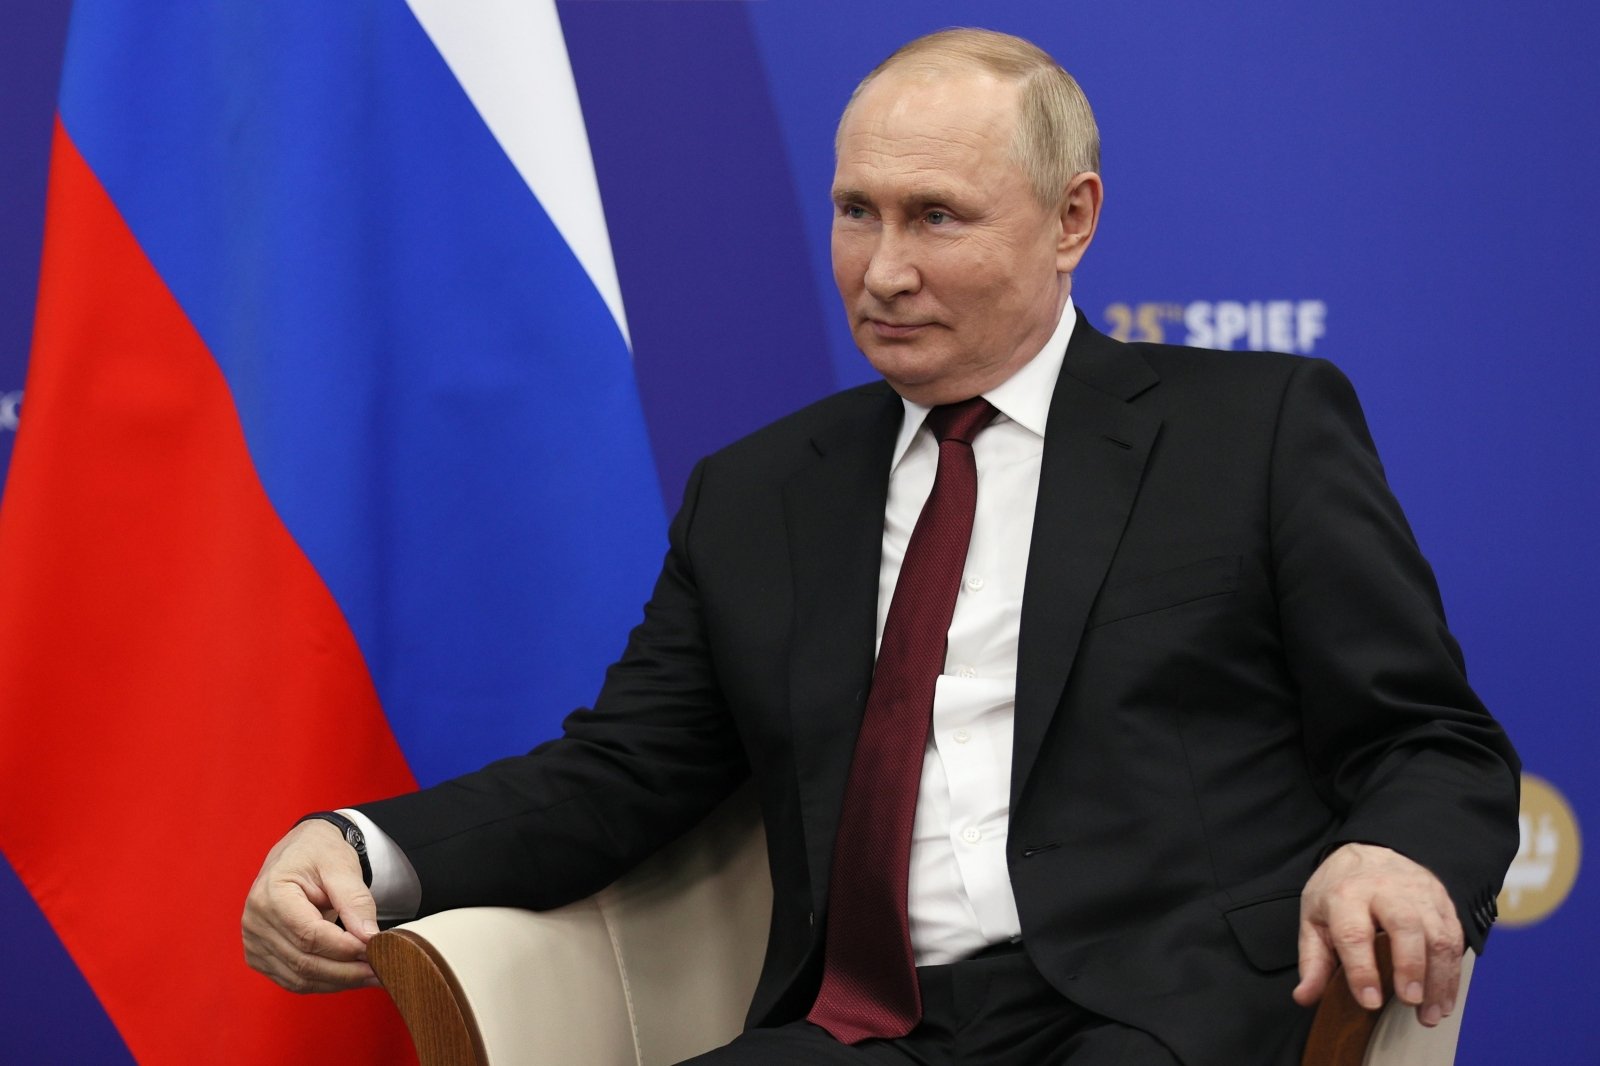 Primo ministro italiano: Secondo il leader del G-20, Putin non parteciperà al vertice di Bali